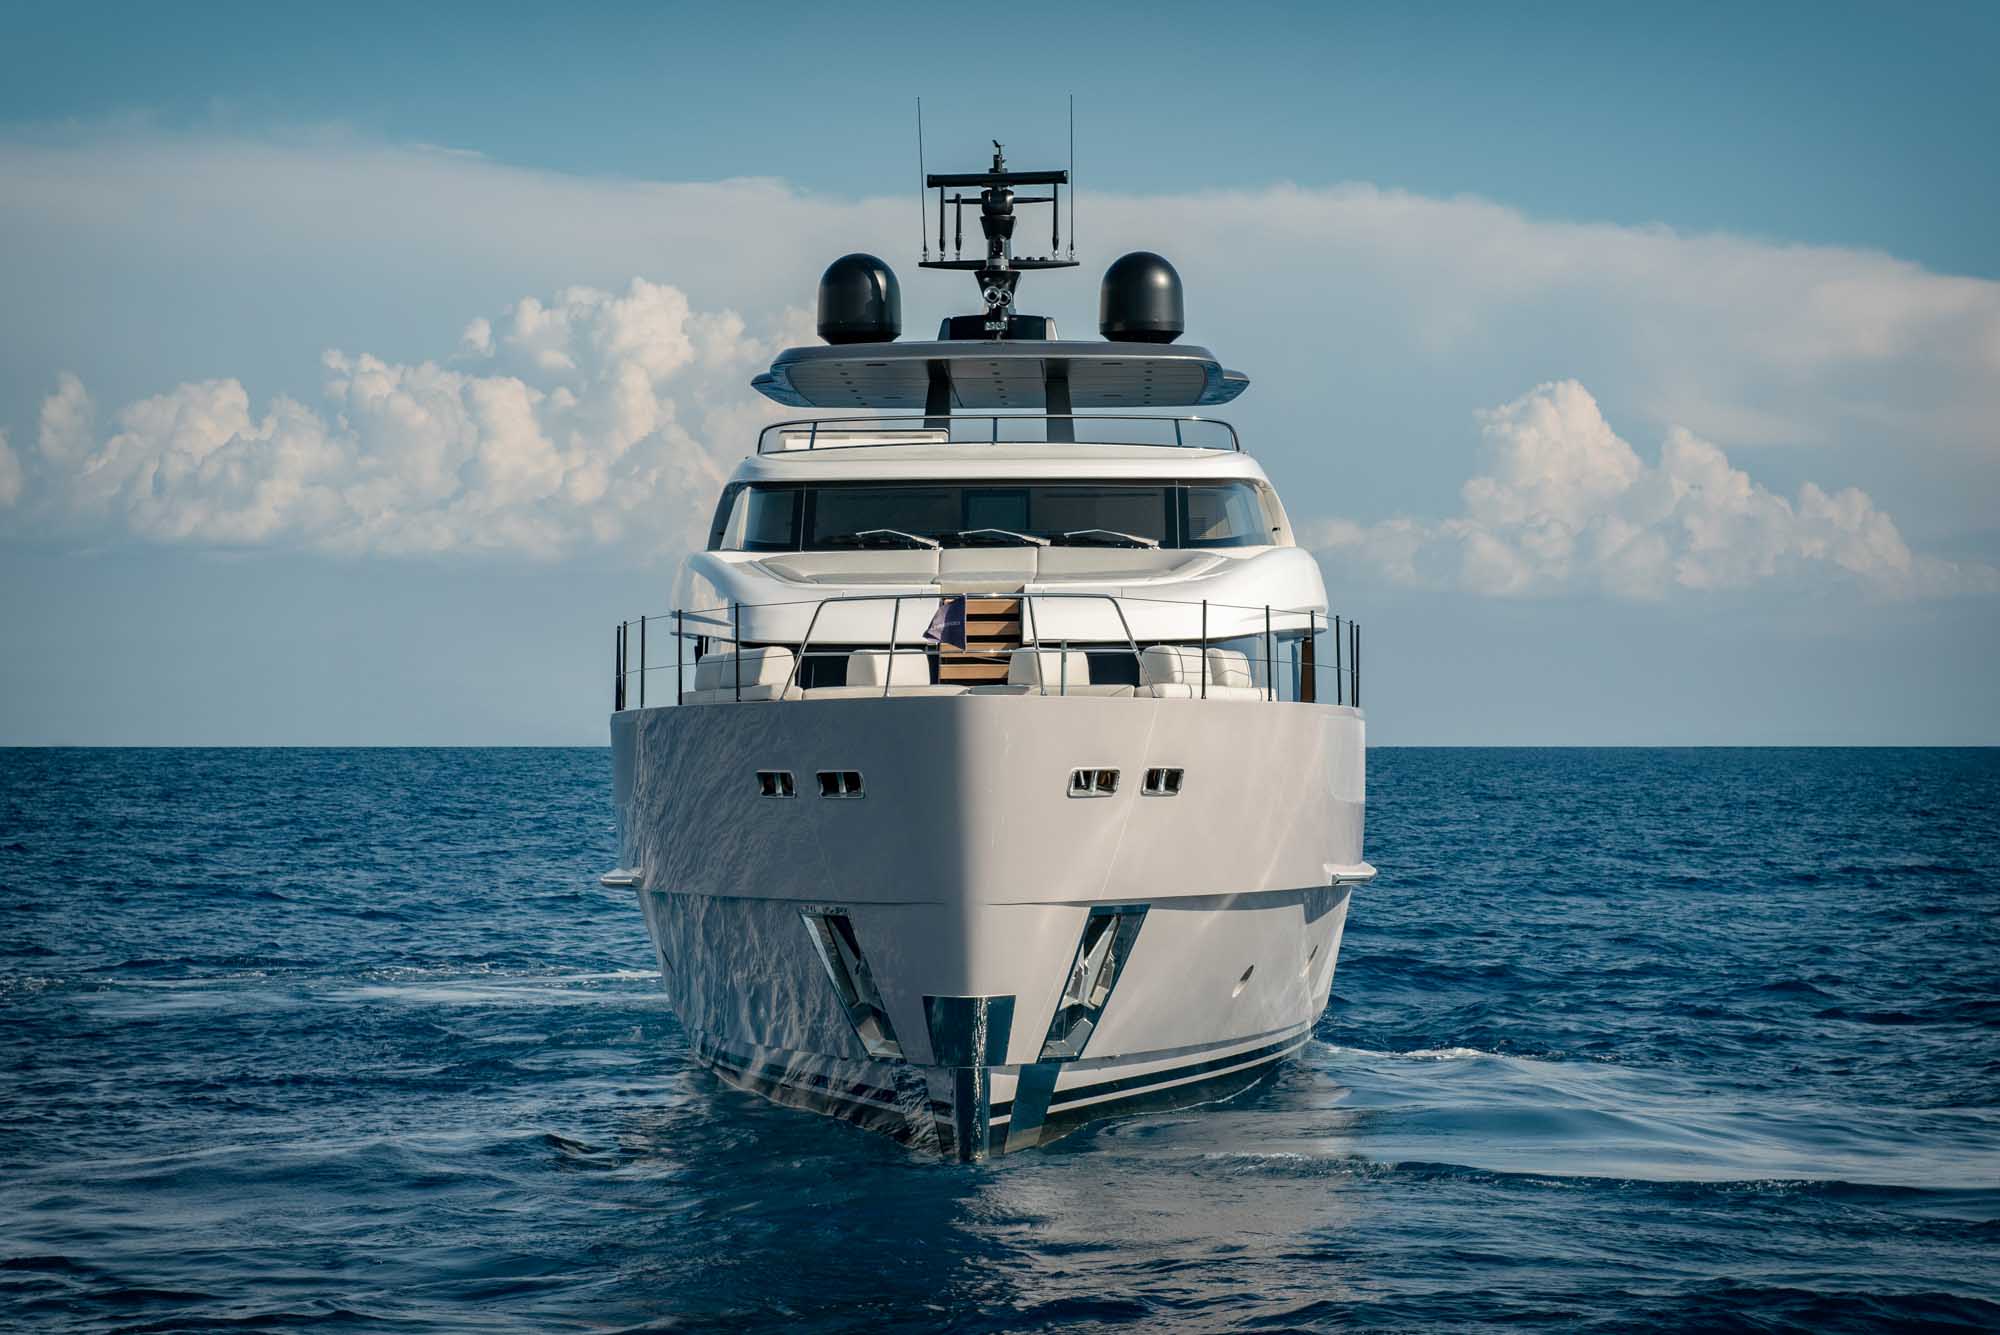 007 san lorenzo yacht